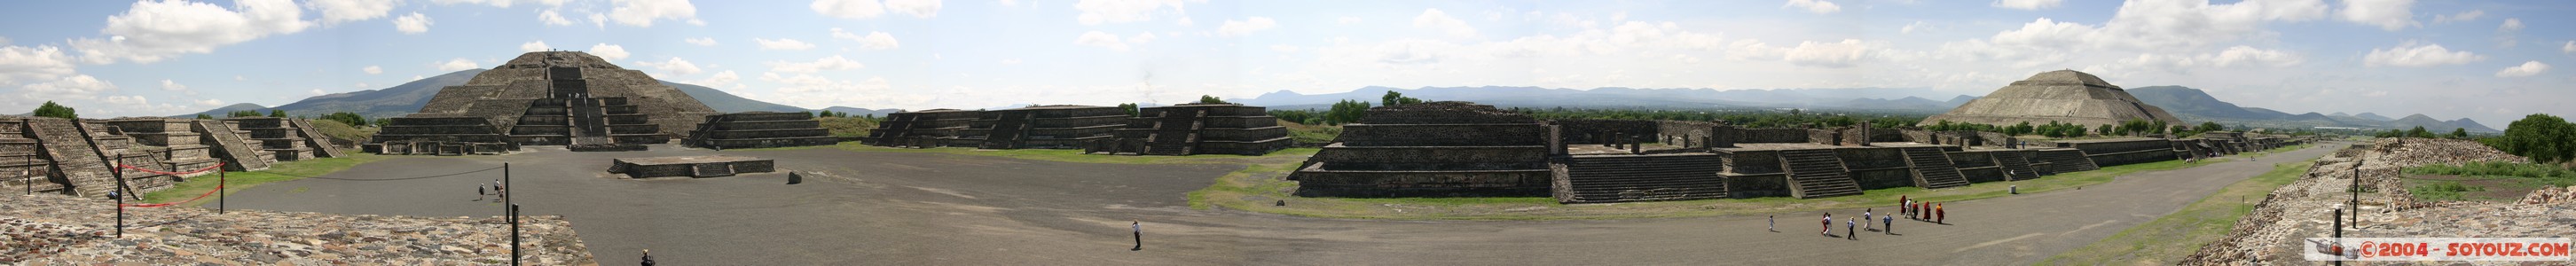 Teotihuacan - Vue panoramique de la Chaussee aux morts
Mots-clés: Ruines patrimoine unesco